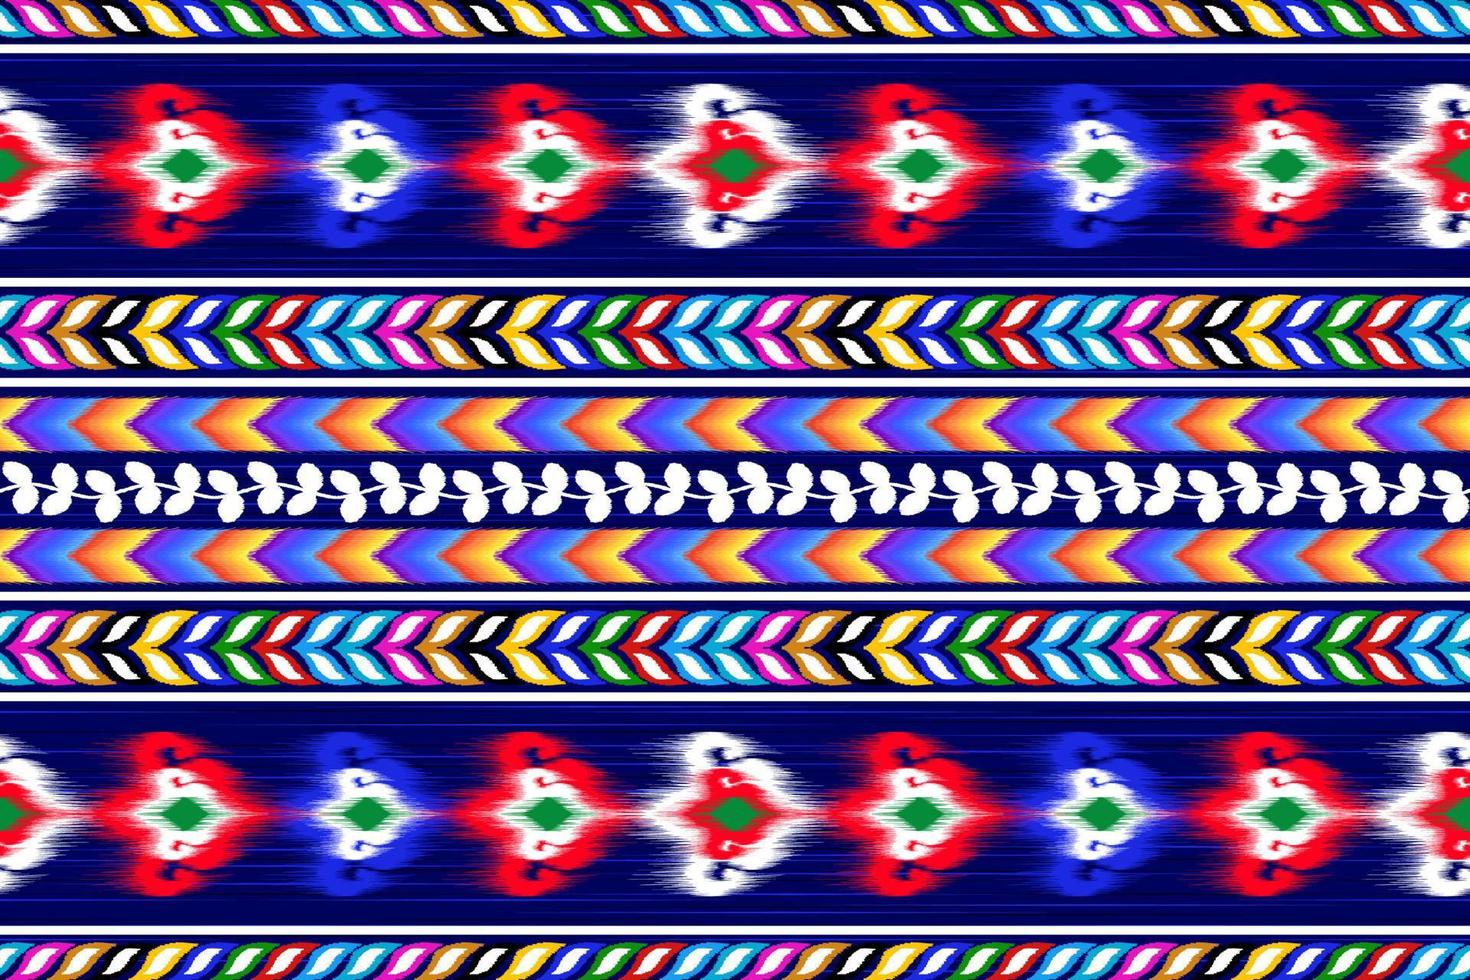 geometrisch abstract etnisch patroonontwerp. Azteekse stof tapijt mandala ornamenten textiel decoraties behang. tribal boho inheemse etnische turkije traditionele borduurwerk vector background